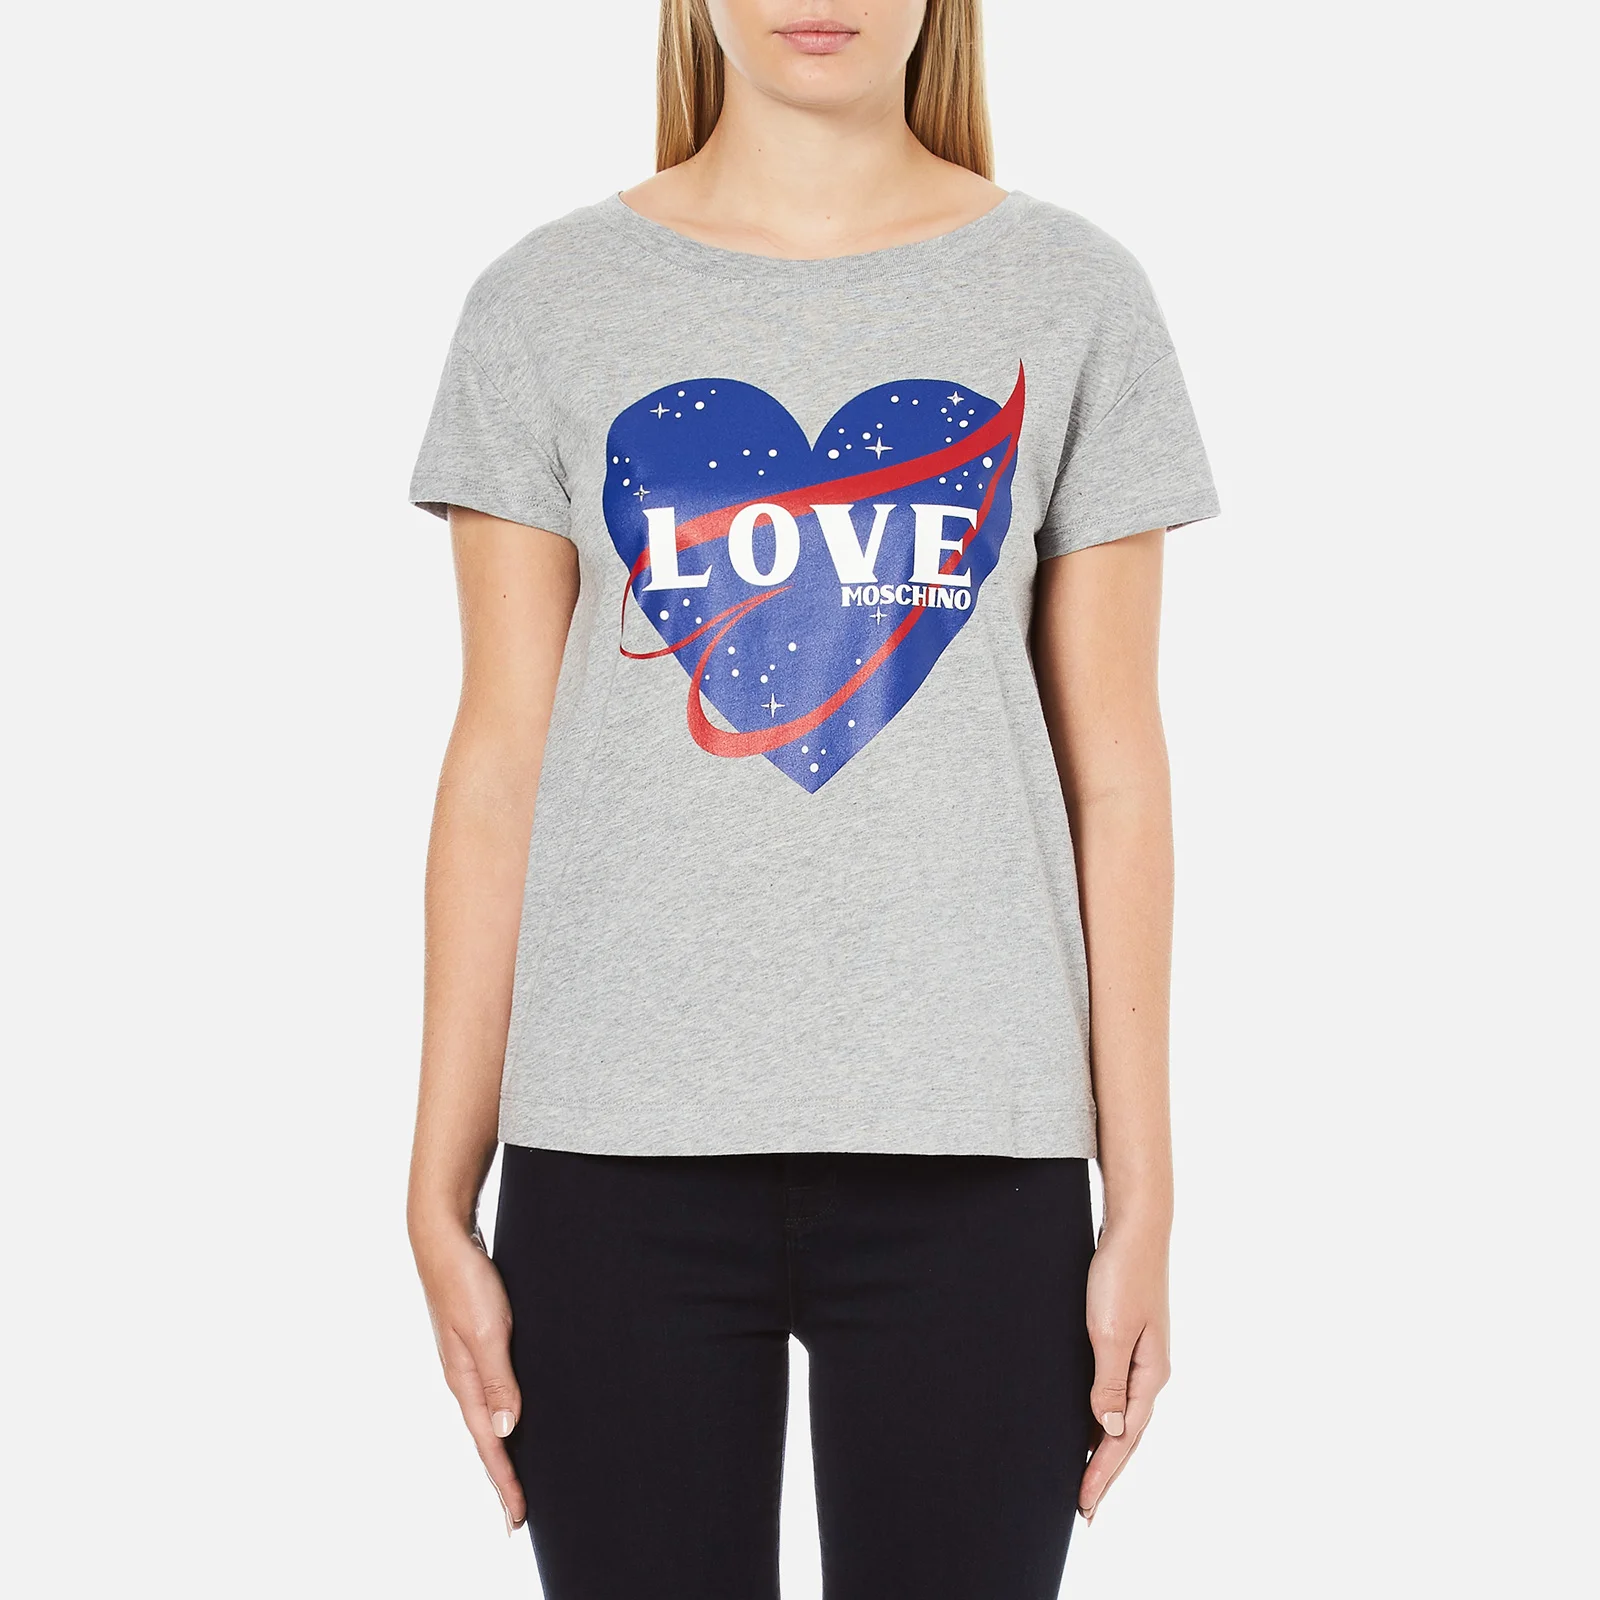 Love Moschino Women's Love Heart T-Shirt - Medium Grey Image 1